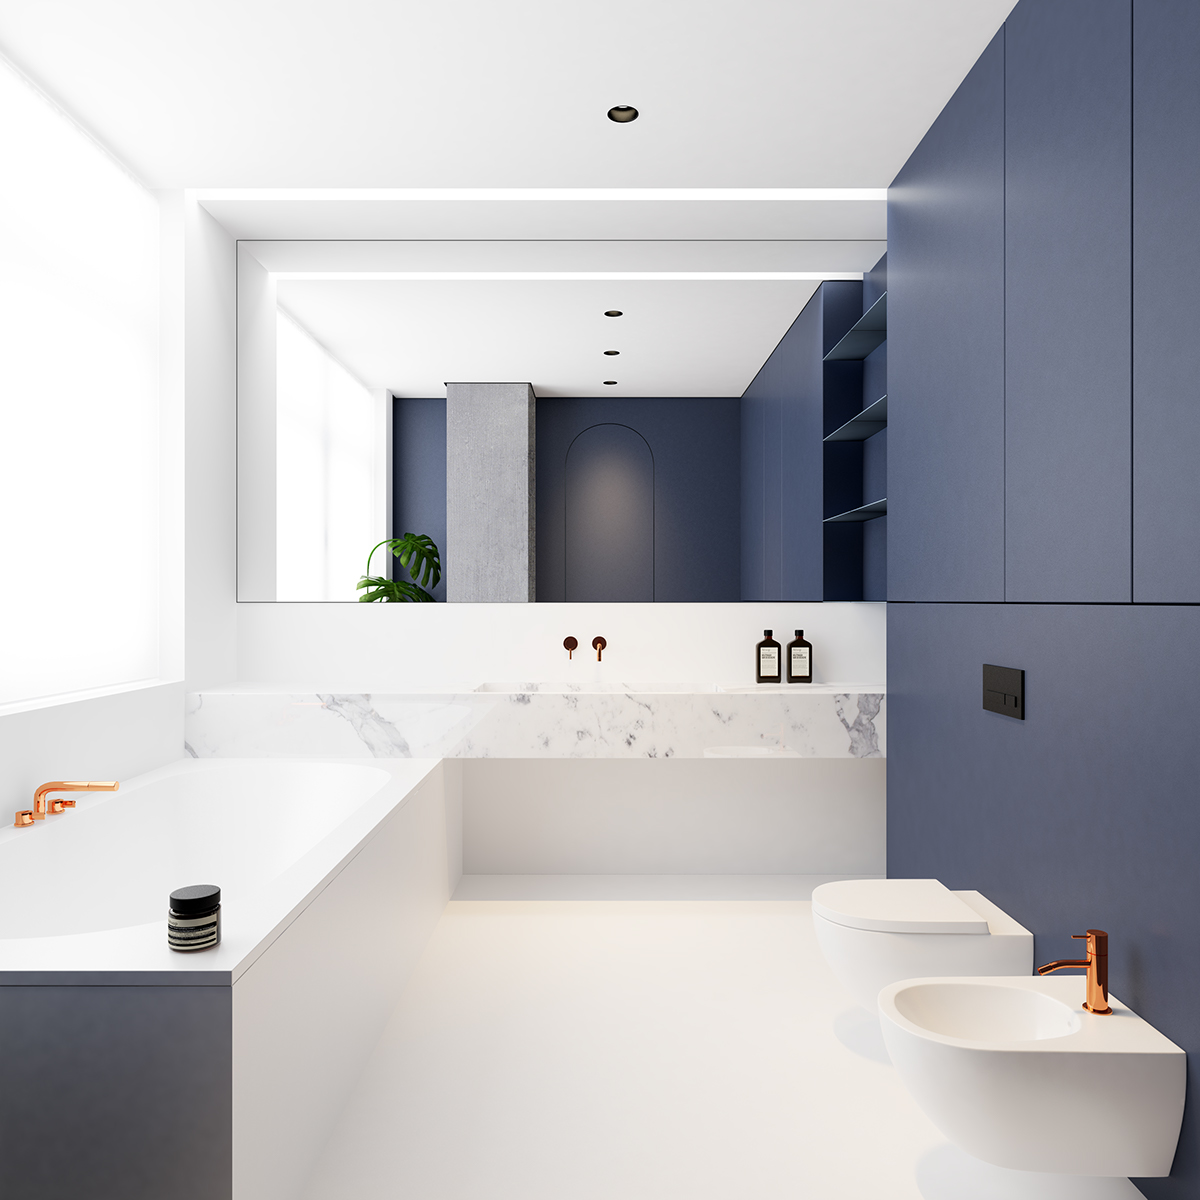 Architect Emil Dervish koos voor deze color blocking badkamer voor een mooi pallet van blauw, wit en koper.